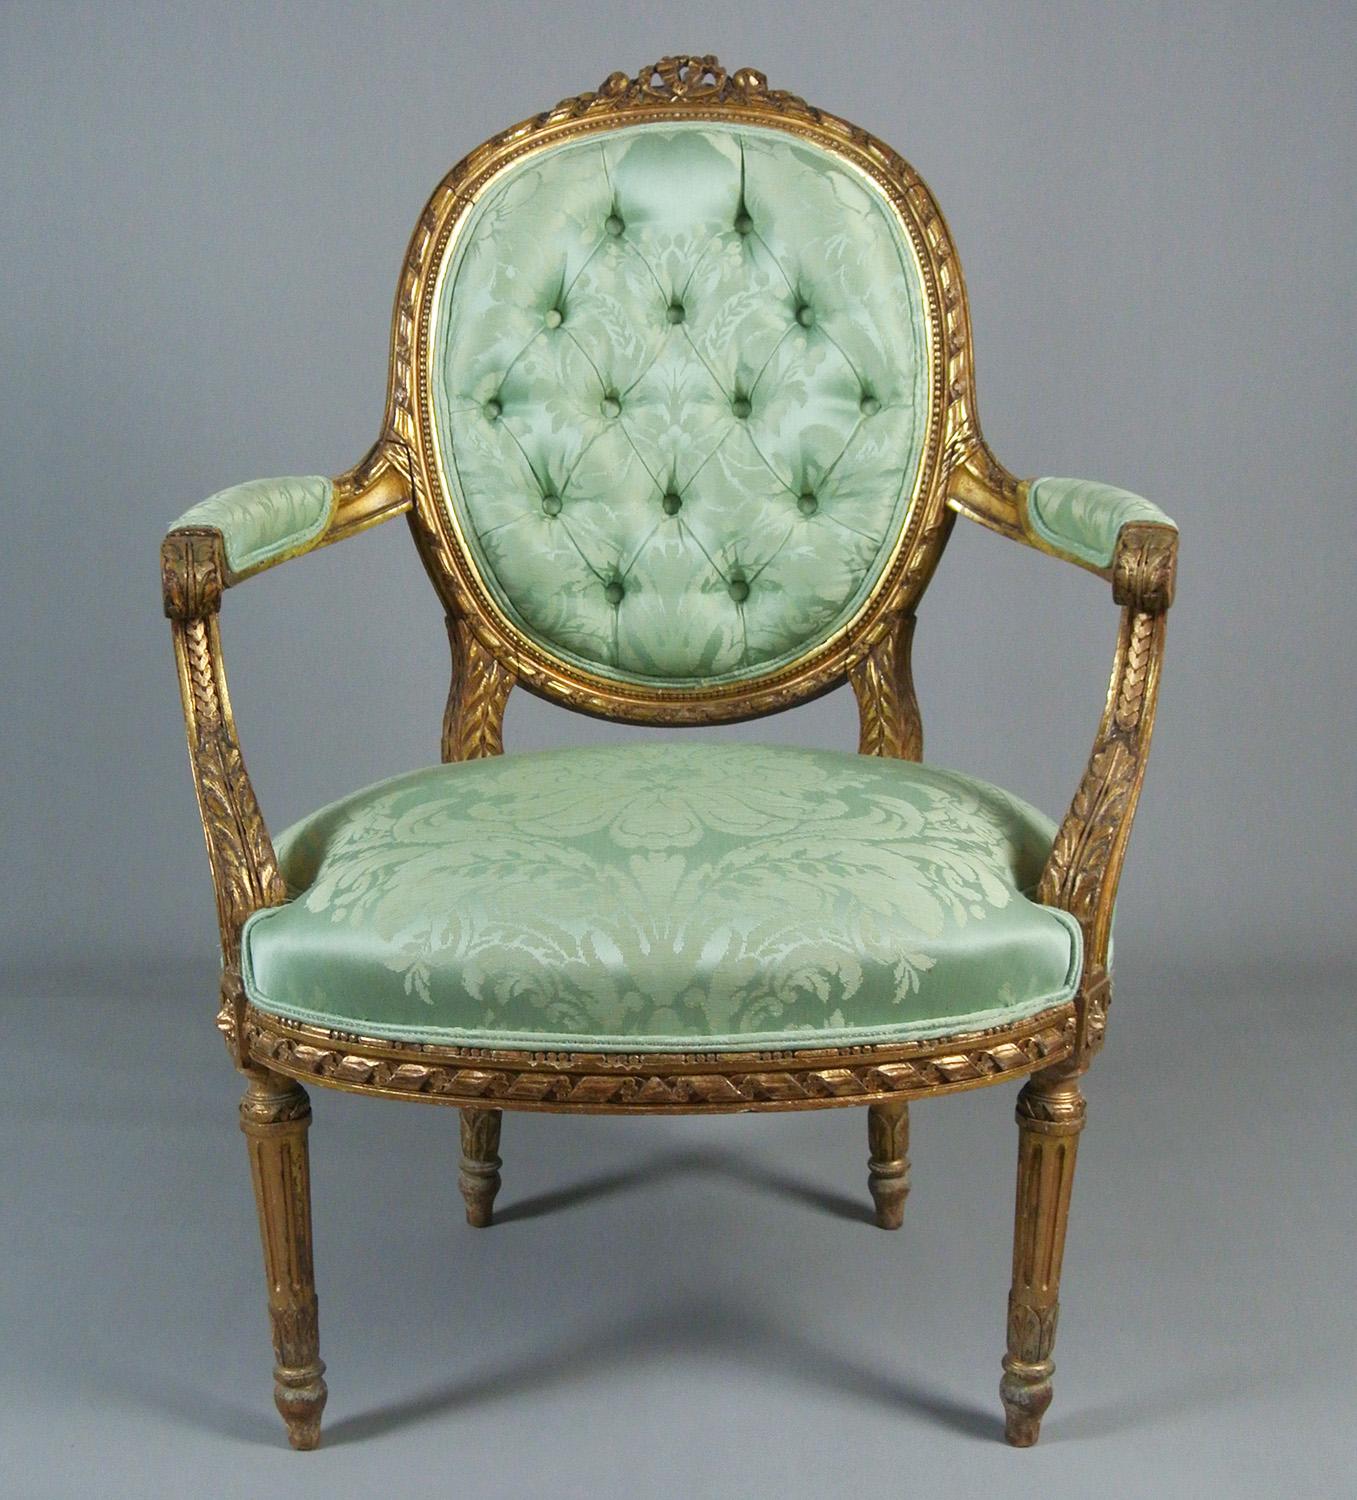 Nouvellement tapissé d'une pure soie vert printemps de la Gainsborough Silk Weaving Company (épais tissage à partir d'un modèle de tissu original du XVIIIe siècle) et avec des détails originaux à double passepoil et à dos de bouton.

Les accoudoirs